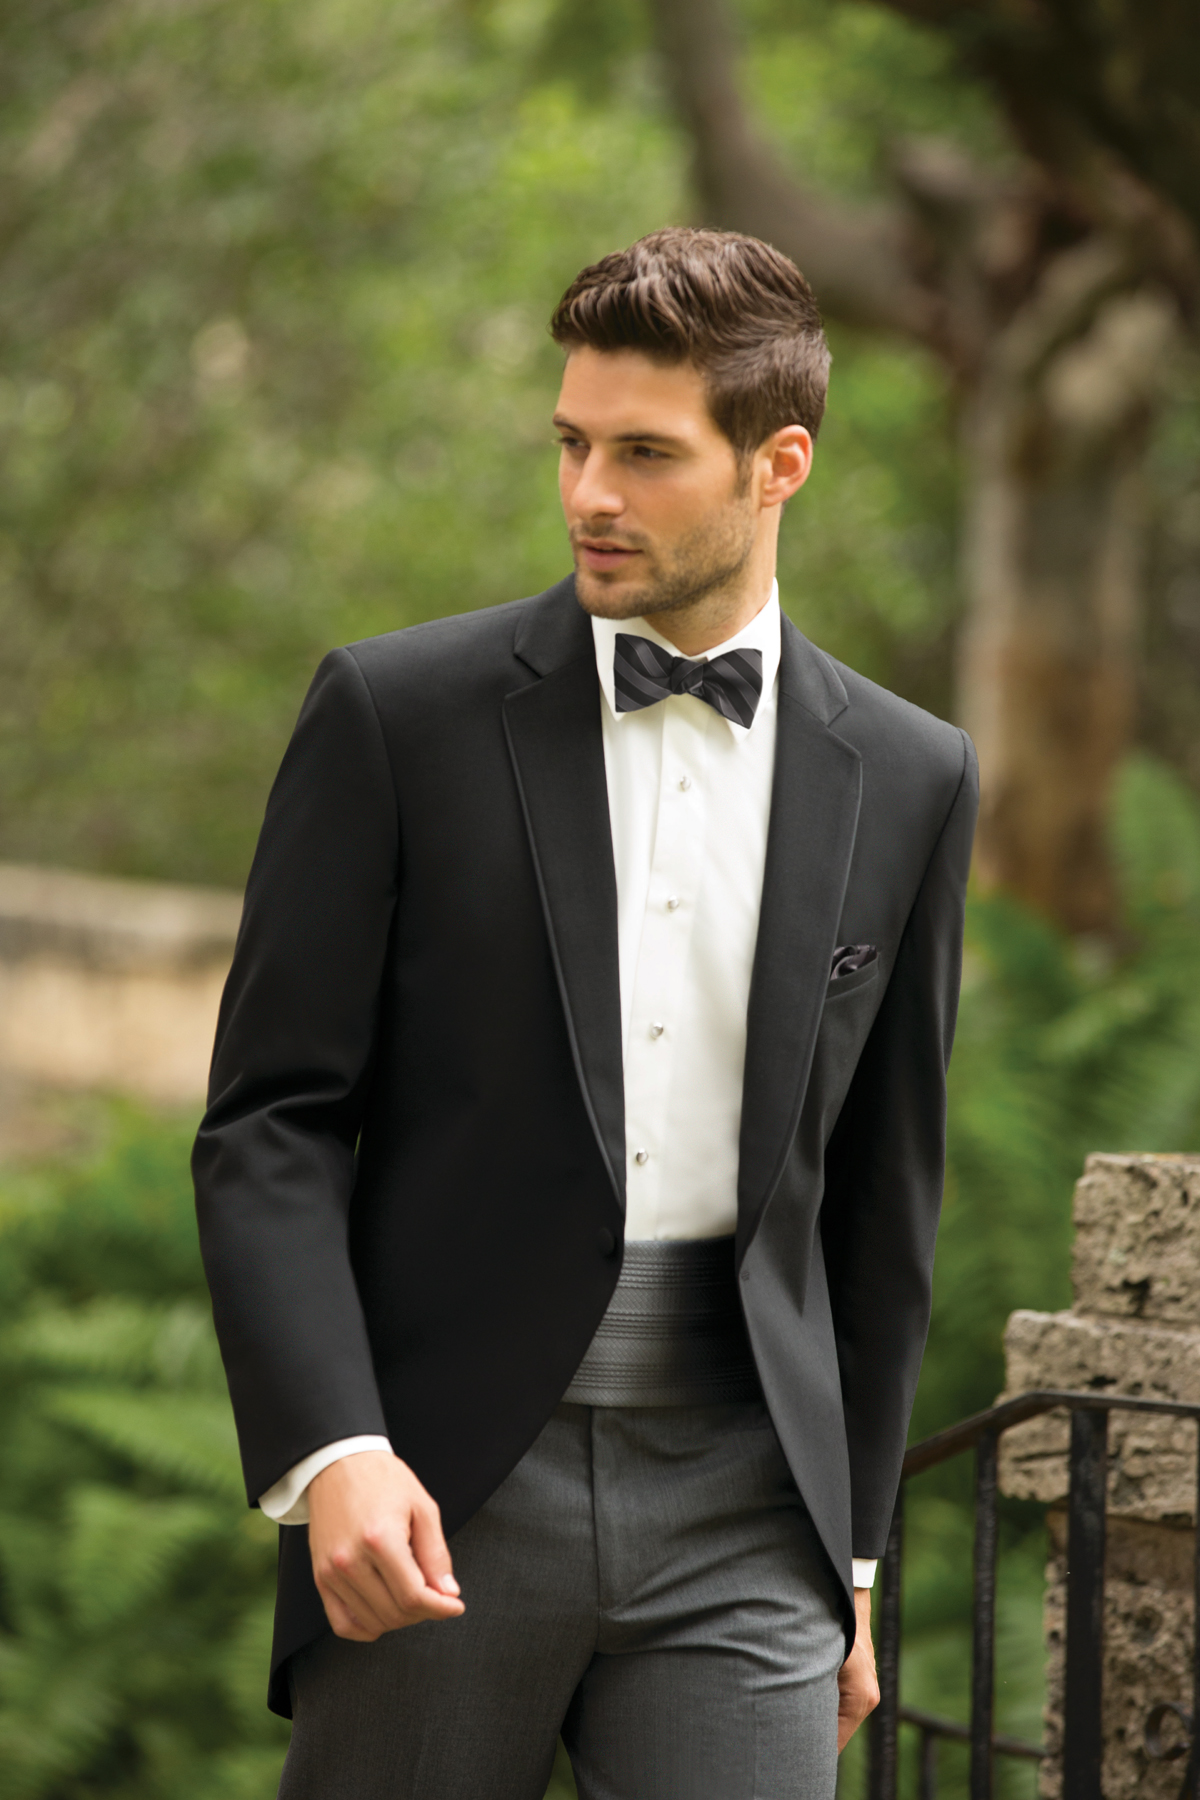 Mens-Wedding-tuxedos-ideas-2015 00